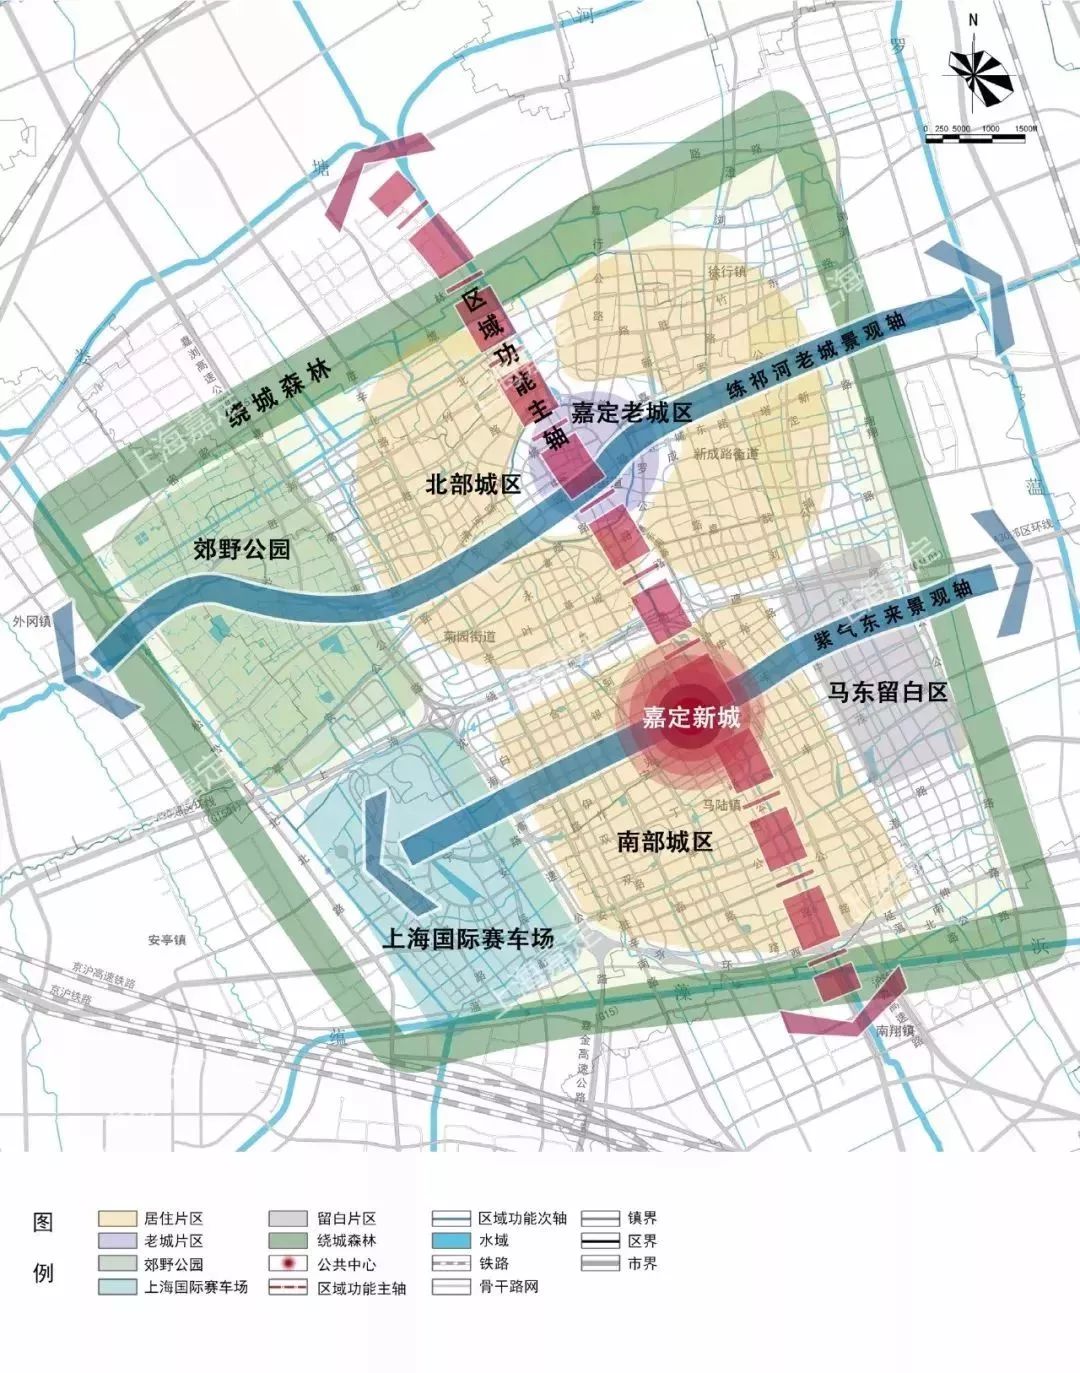 城事| 2035年的嘉定将有多美这份重要的总体规划草案